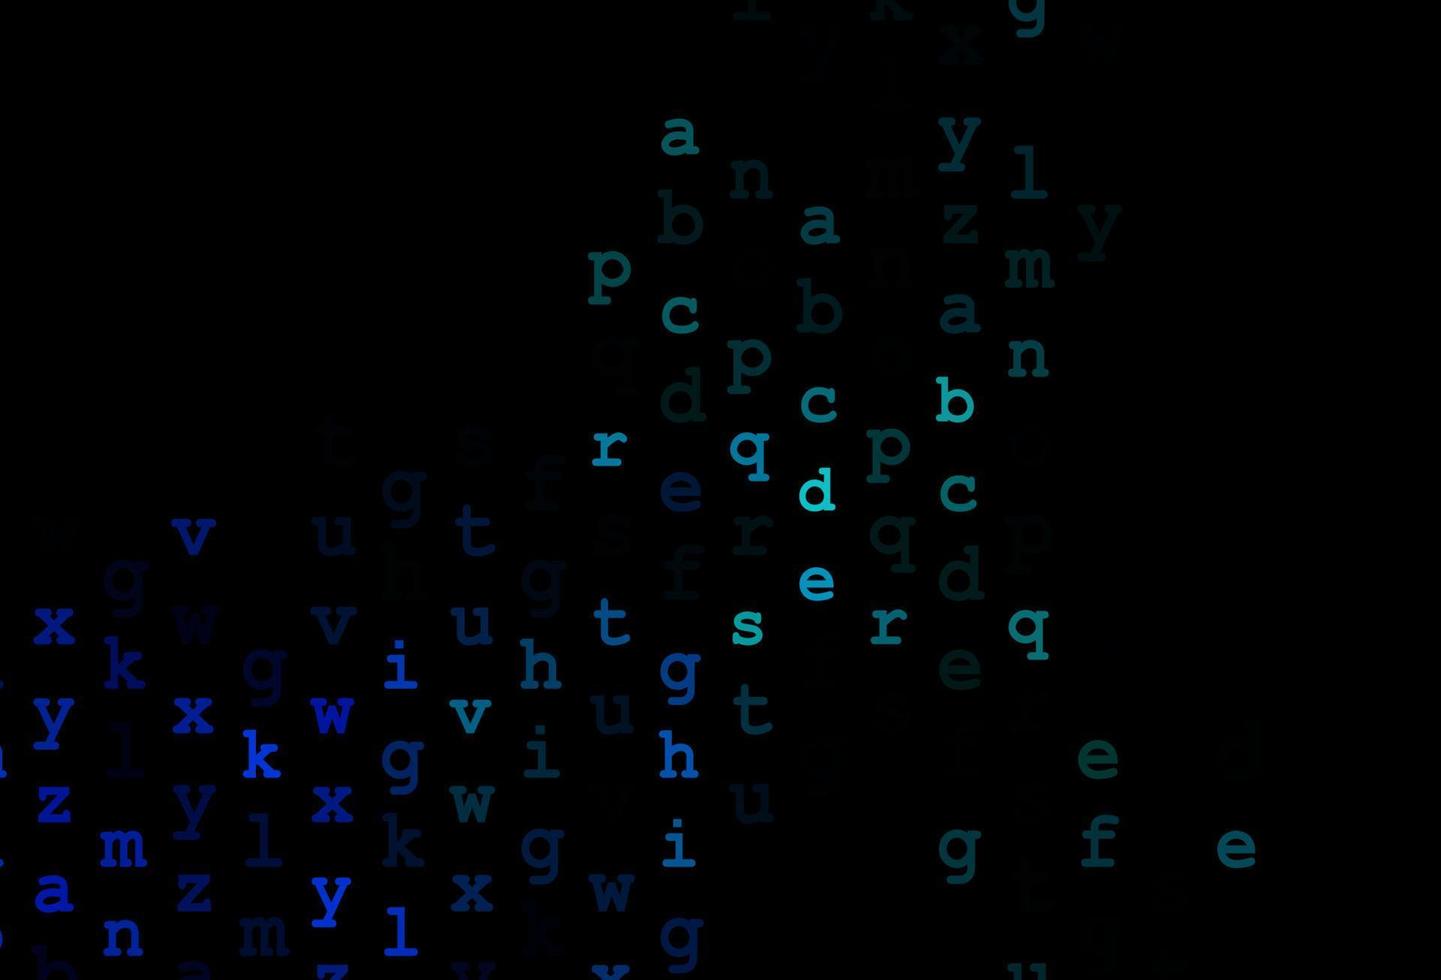 Fondo de vector azul oscuro con signos del alfabeto.